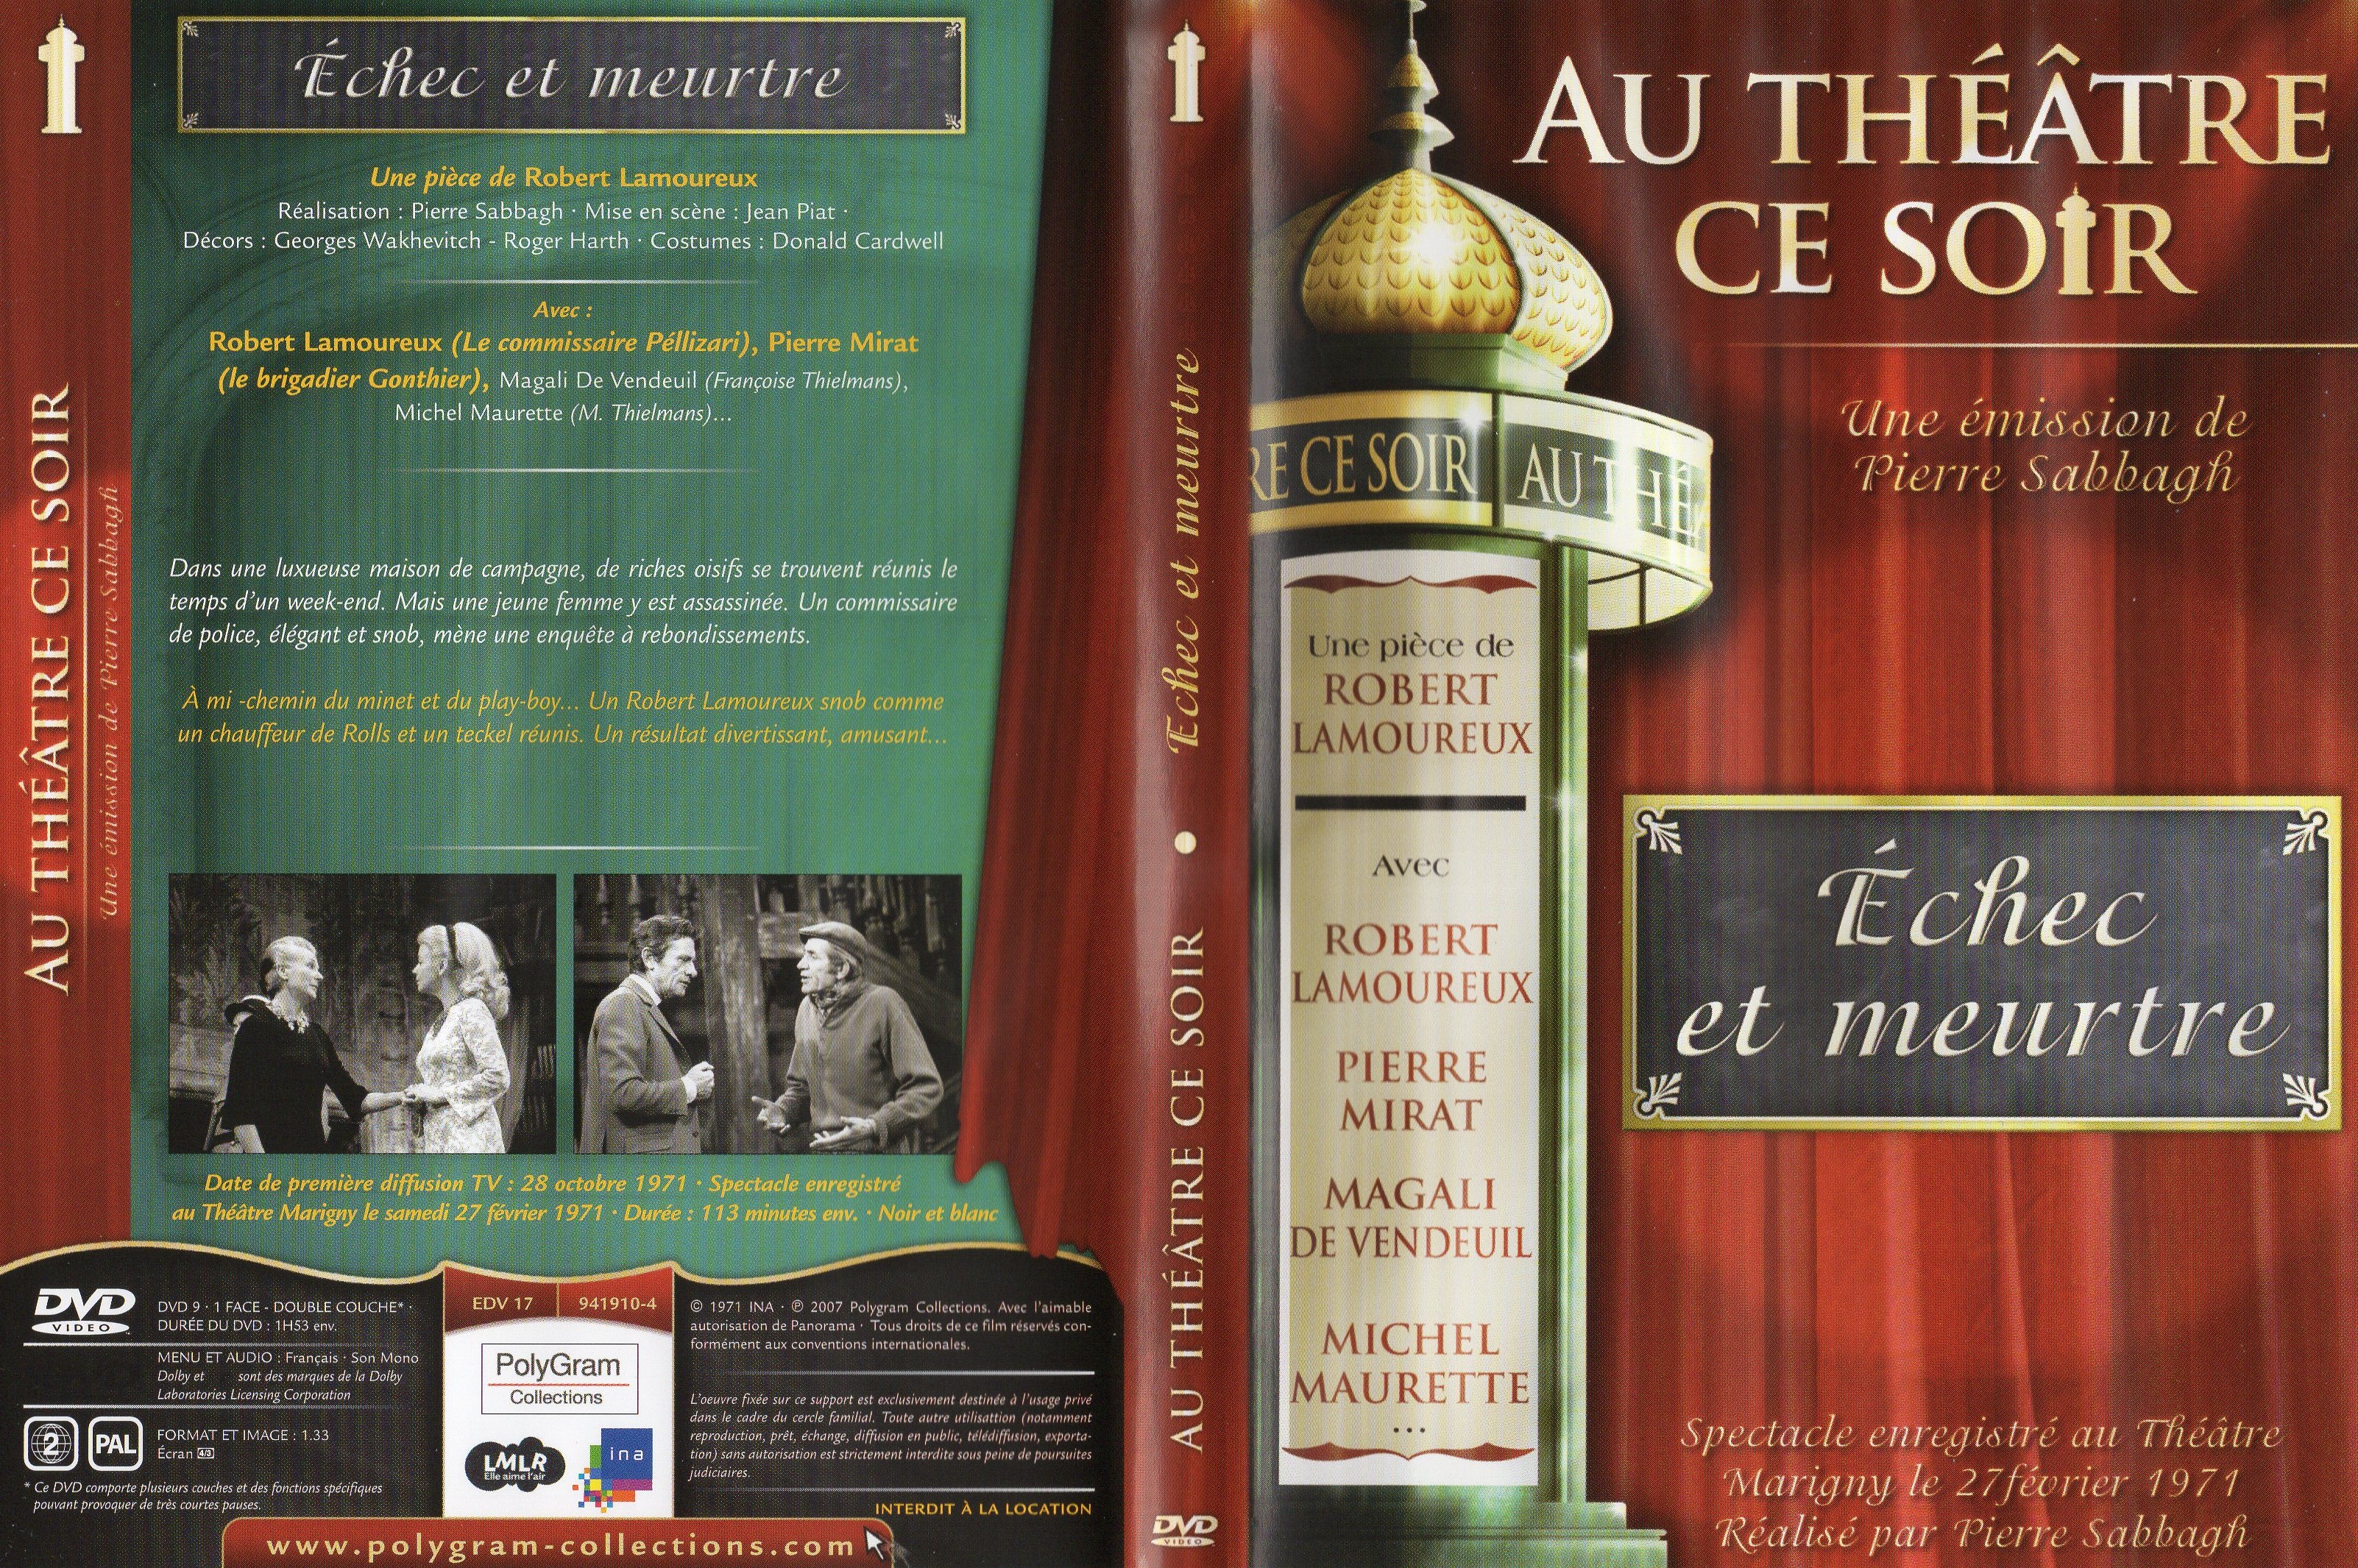 Jaquette DVD Au thatre ce soir - Echec et meurtre v2